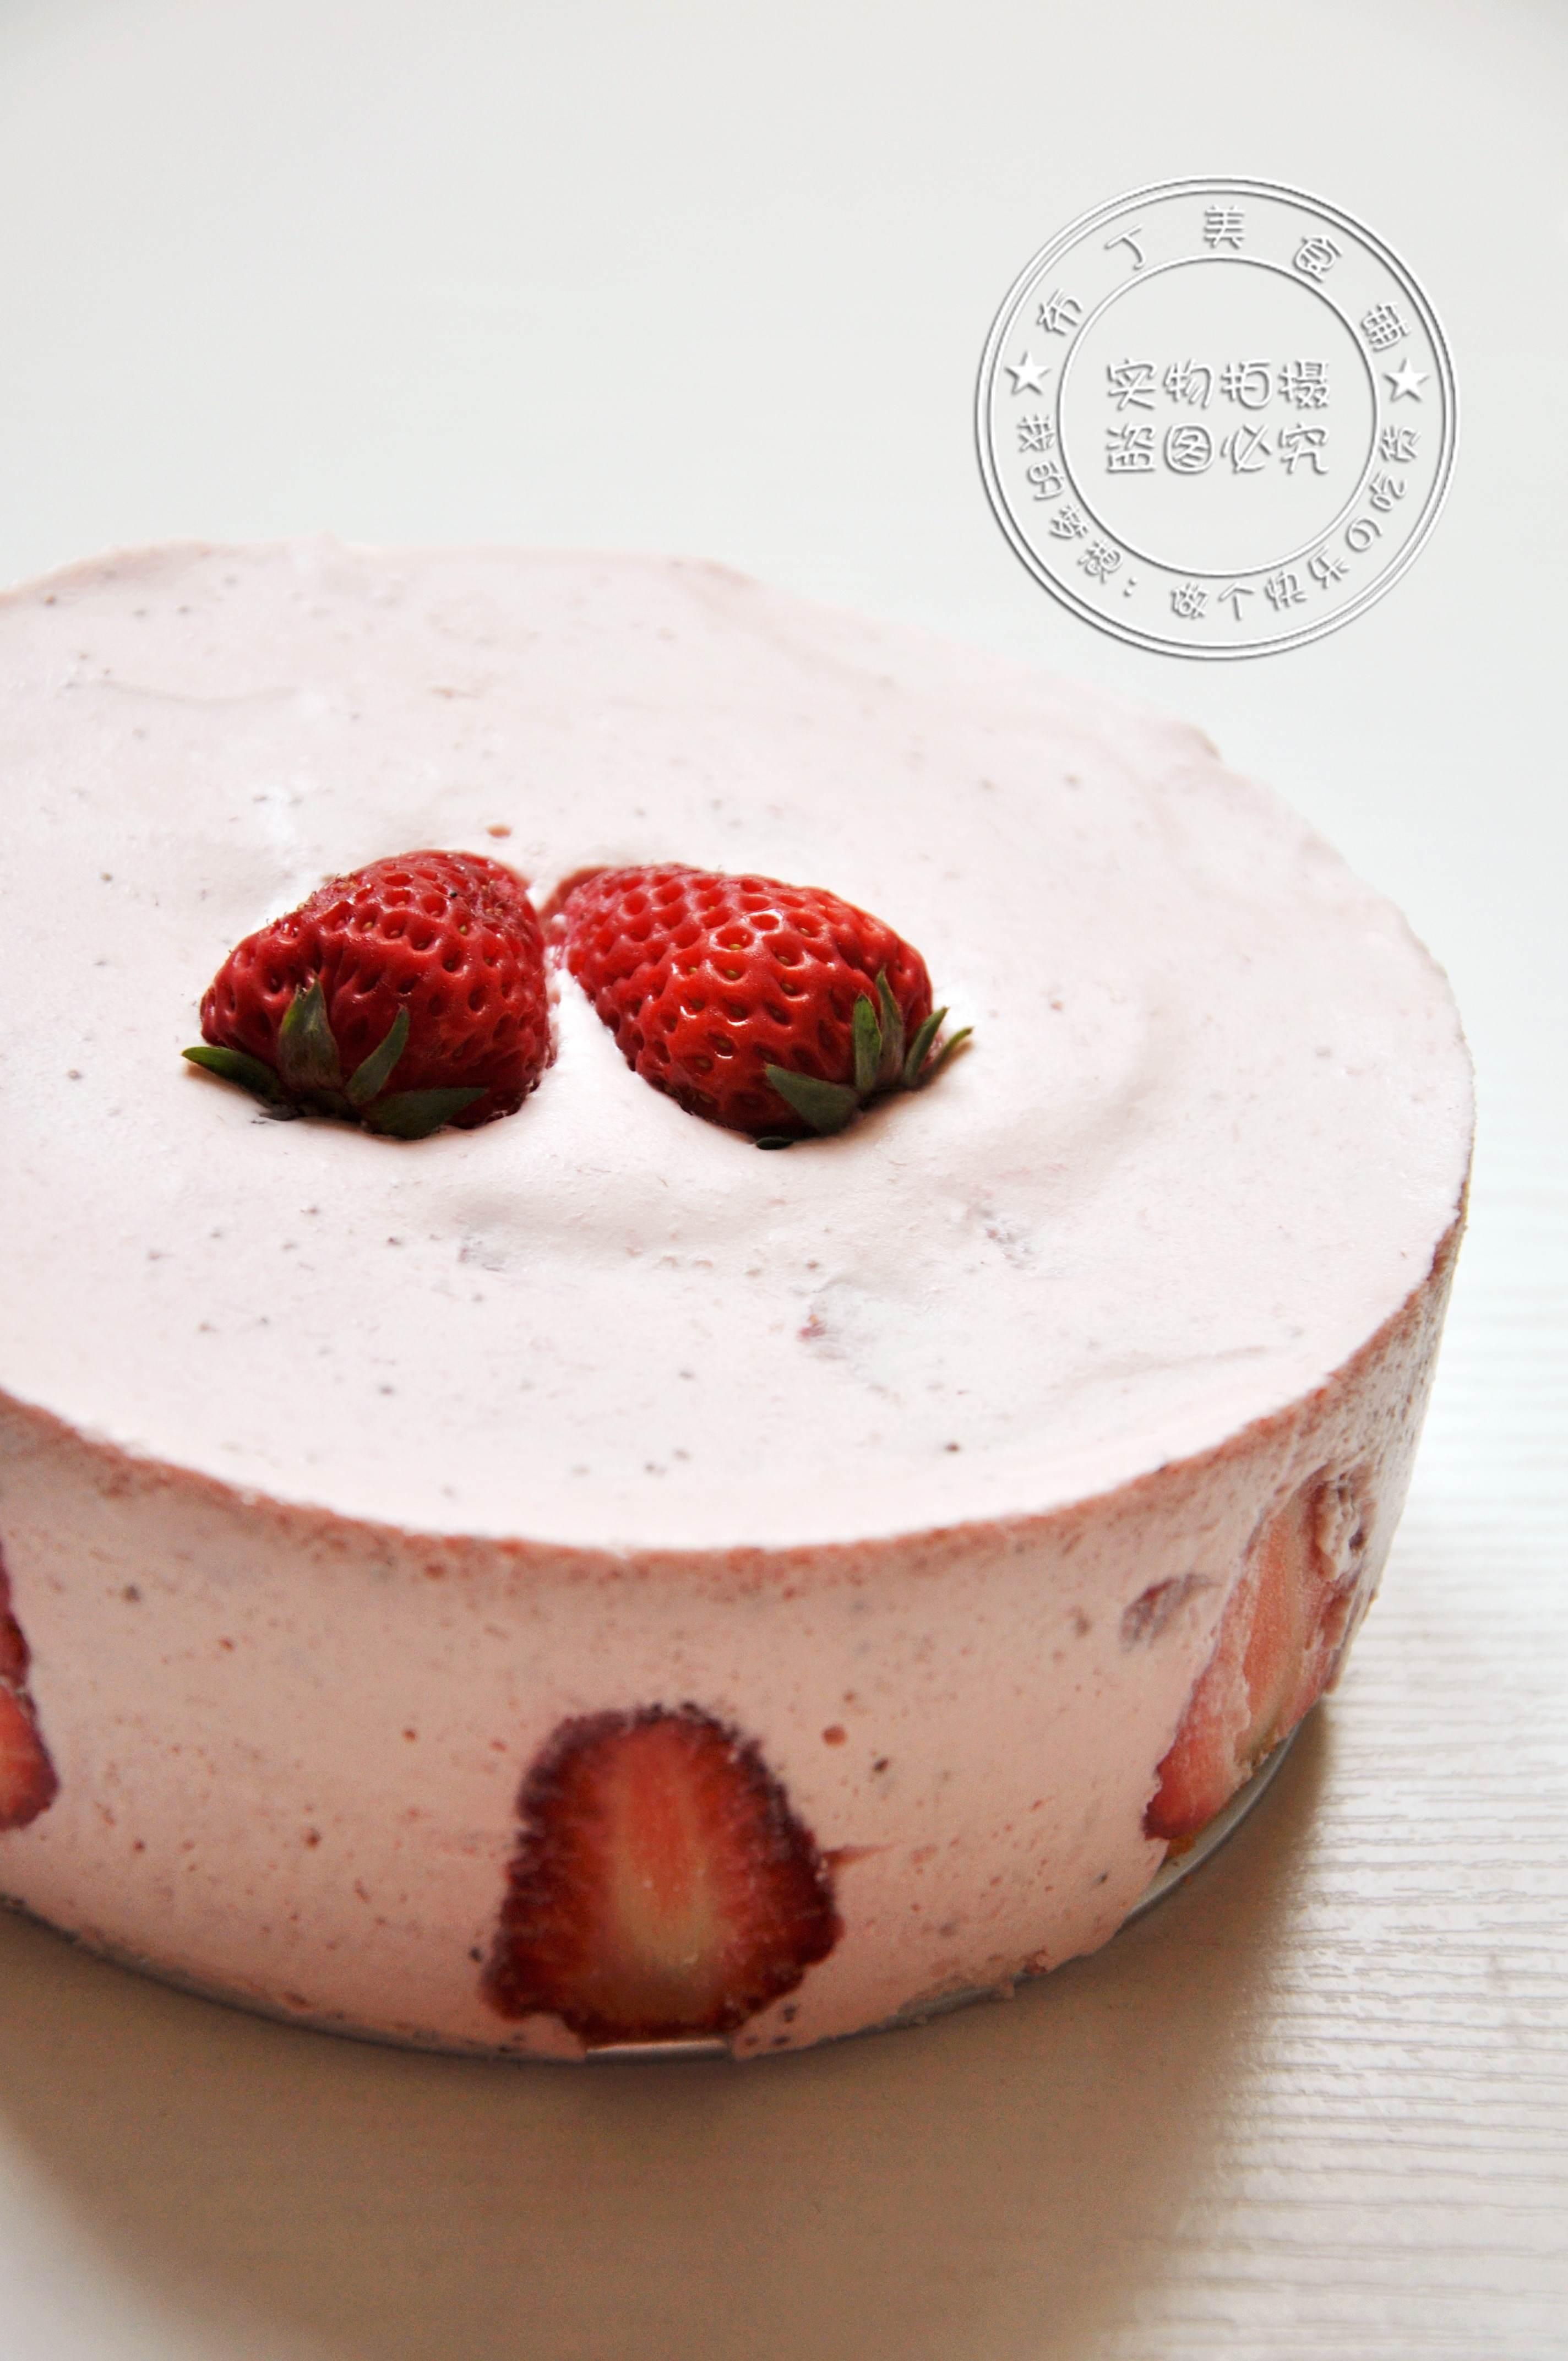 这颜值爱了！草莓大理石芝士慕斯免烤箱甜品 - 哔哩哔哩